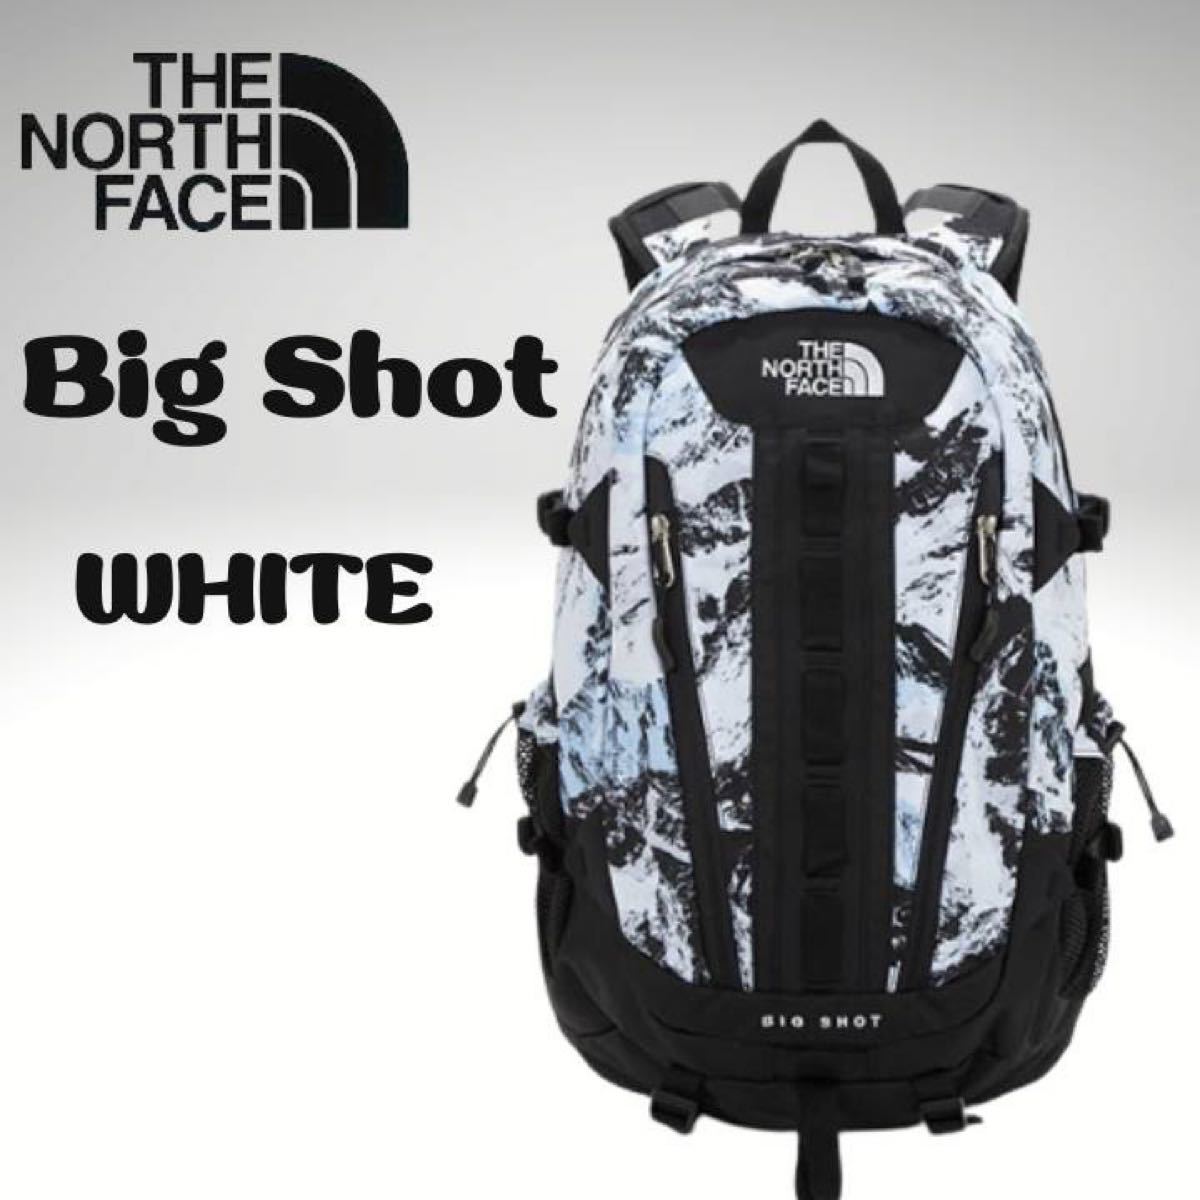 THE NORTH FACE BIG SHOT ノースフェイス ビッグショット 30L バックパック 大容量 新品未使用